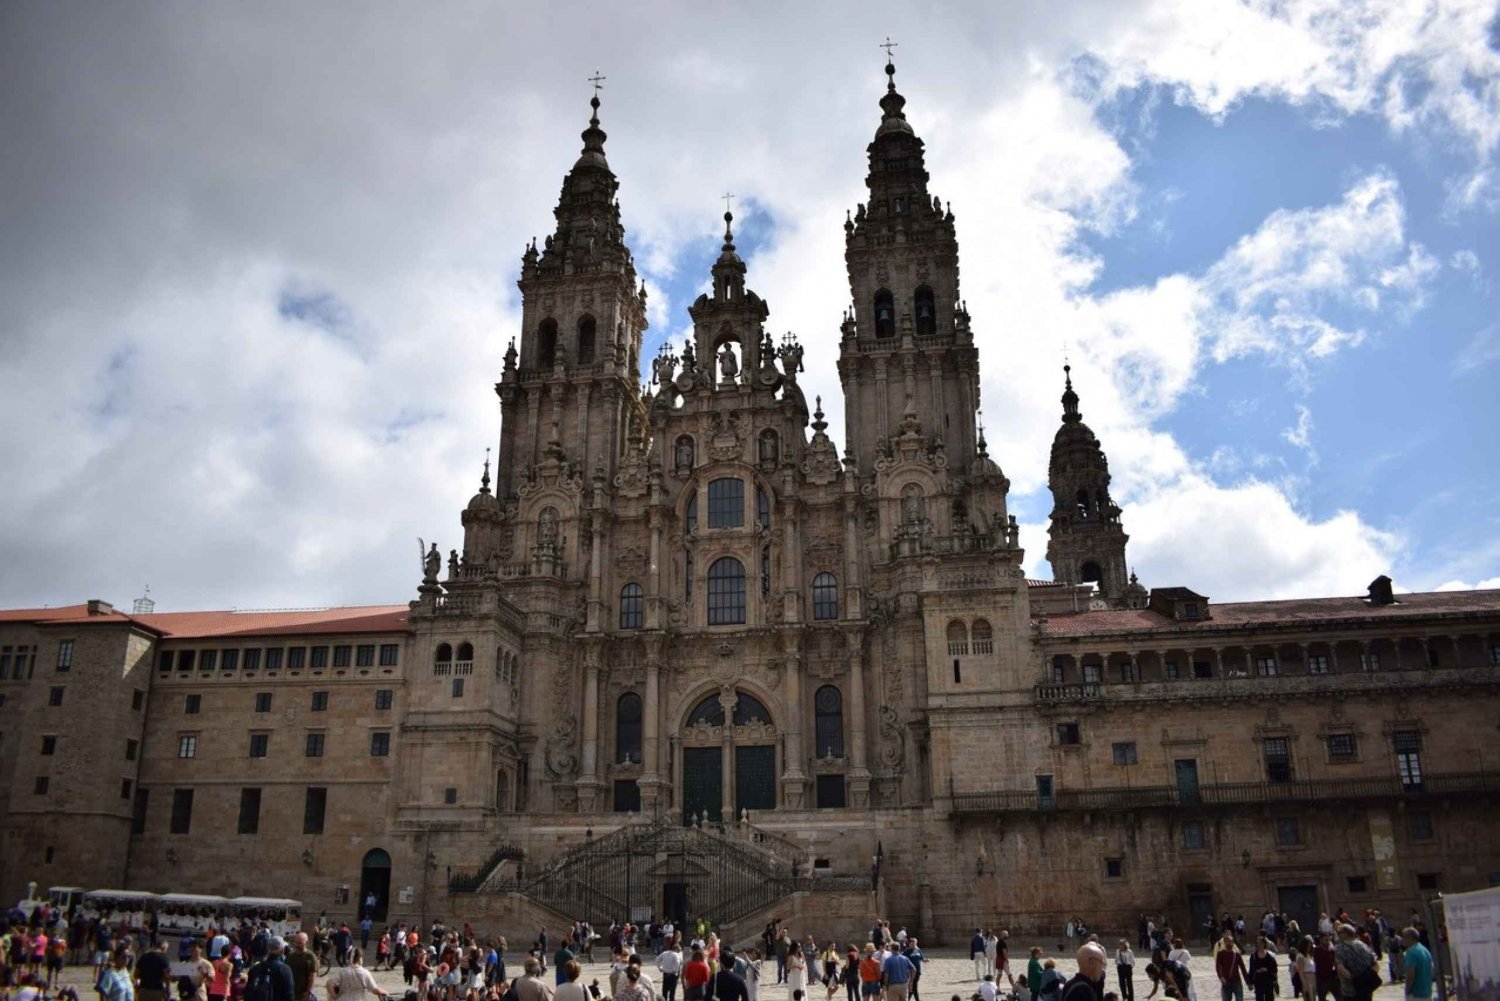 Premium Porto Santiago Compostela tour lunch & wine tasting